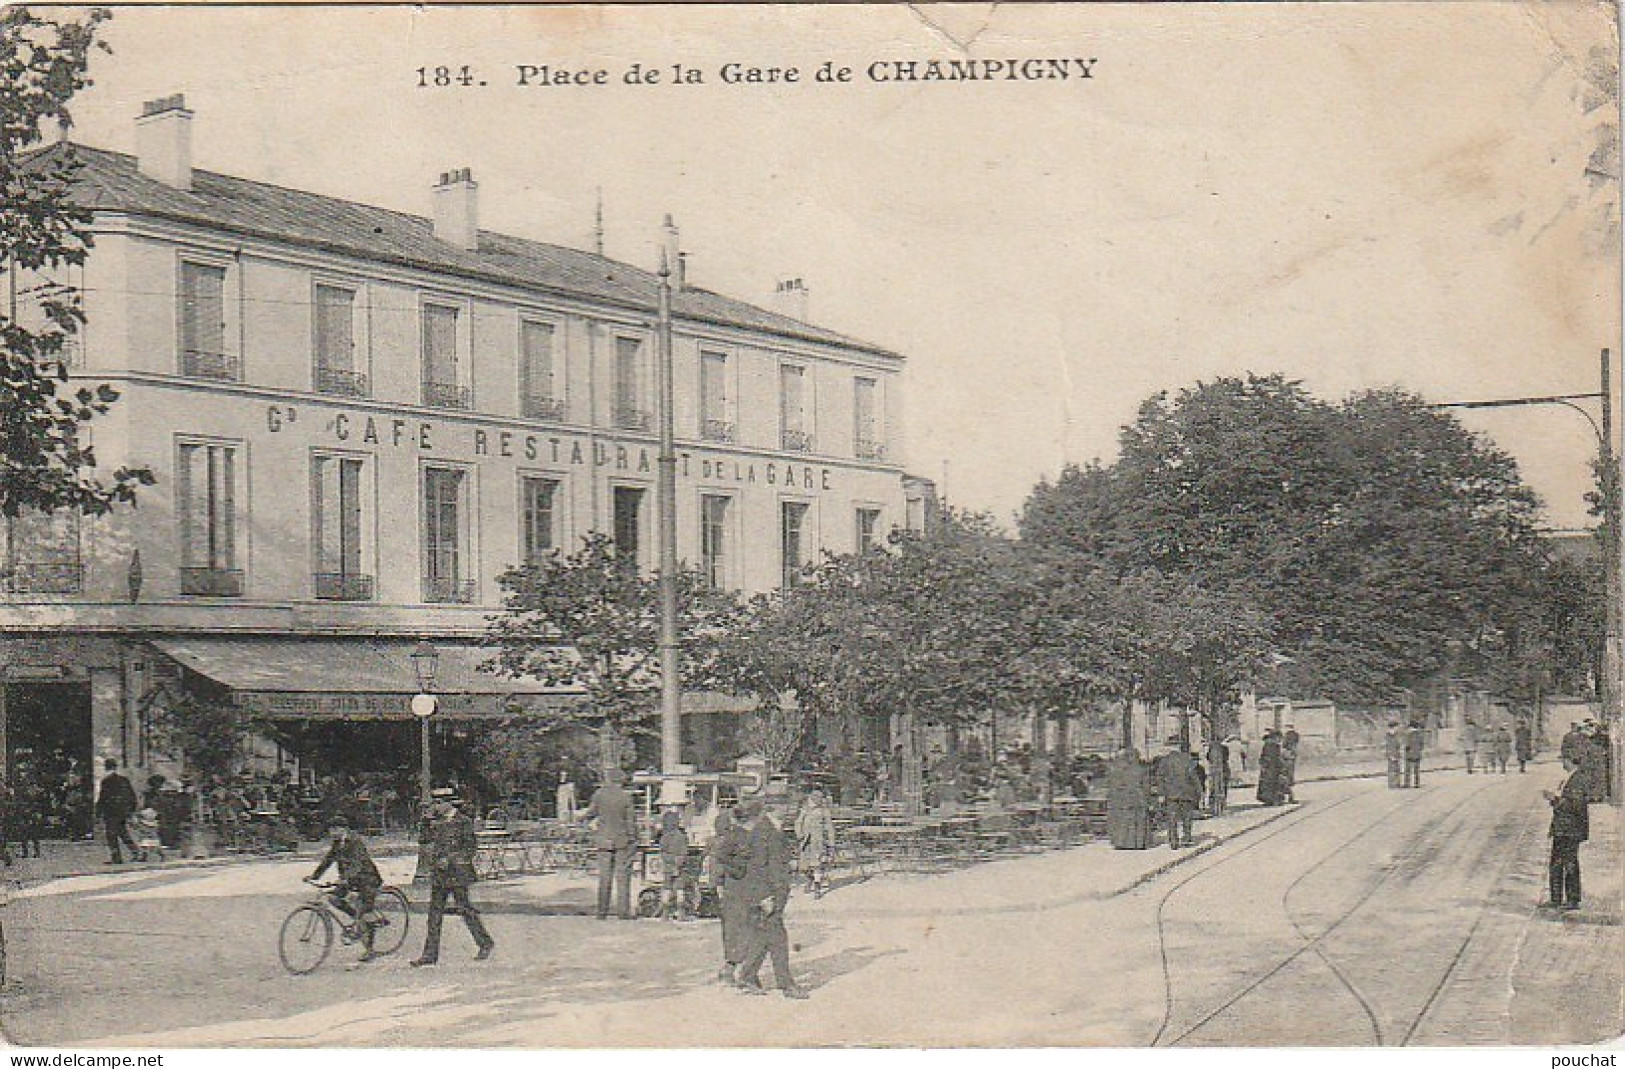 ZY 133-(94) CHAMPIGNY - PLACE DE LA GARE - ANIMATION - GD CAFE RESTAURANT DE LA GARE - 2 SCANS - Champigny Sur Marne